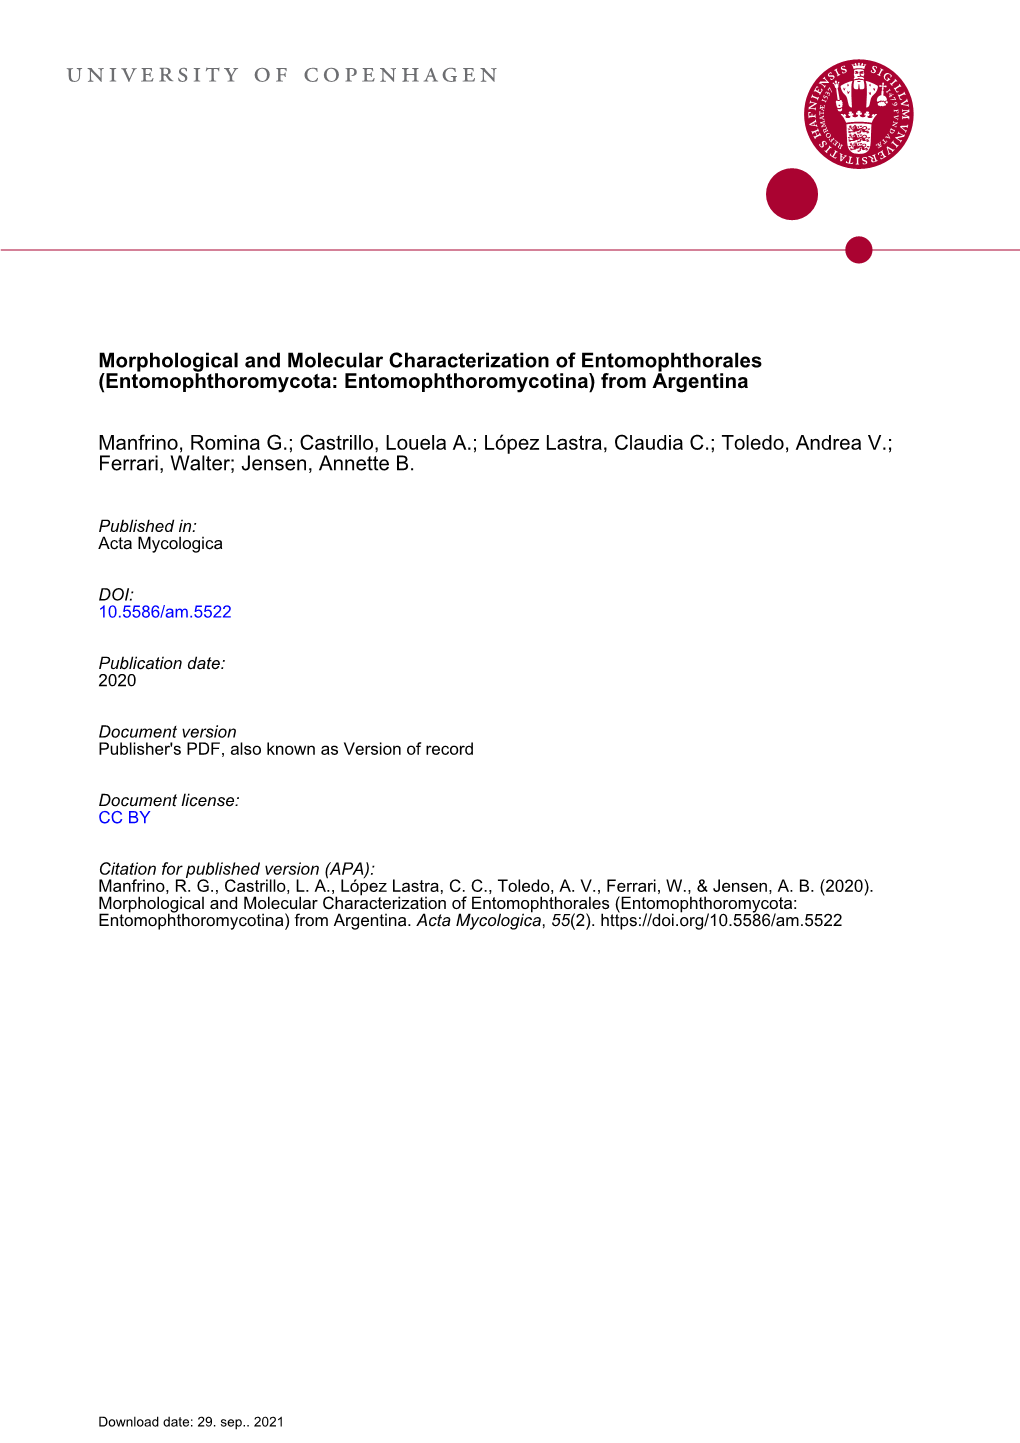 Morphological and Molecular Characterization of Entomophthorales (Entomophthoromycota: Entomophthoromycotina) from Argentina